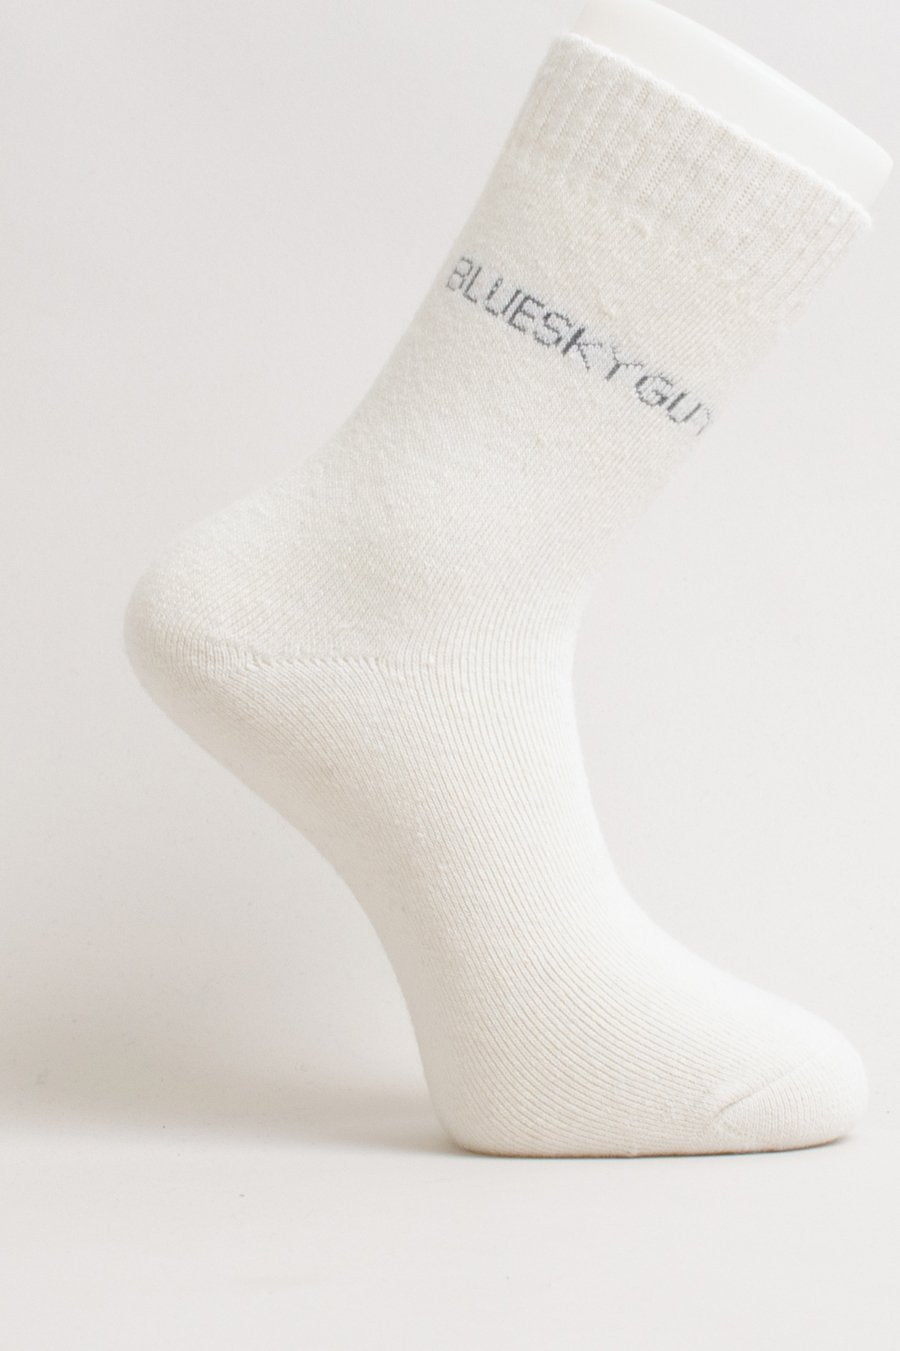 Blue Sky - Men's Merino Wool Socks Active Footwear All Things Being Eco Chilliwack